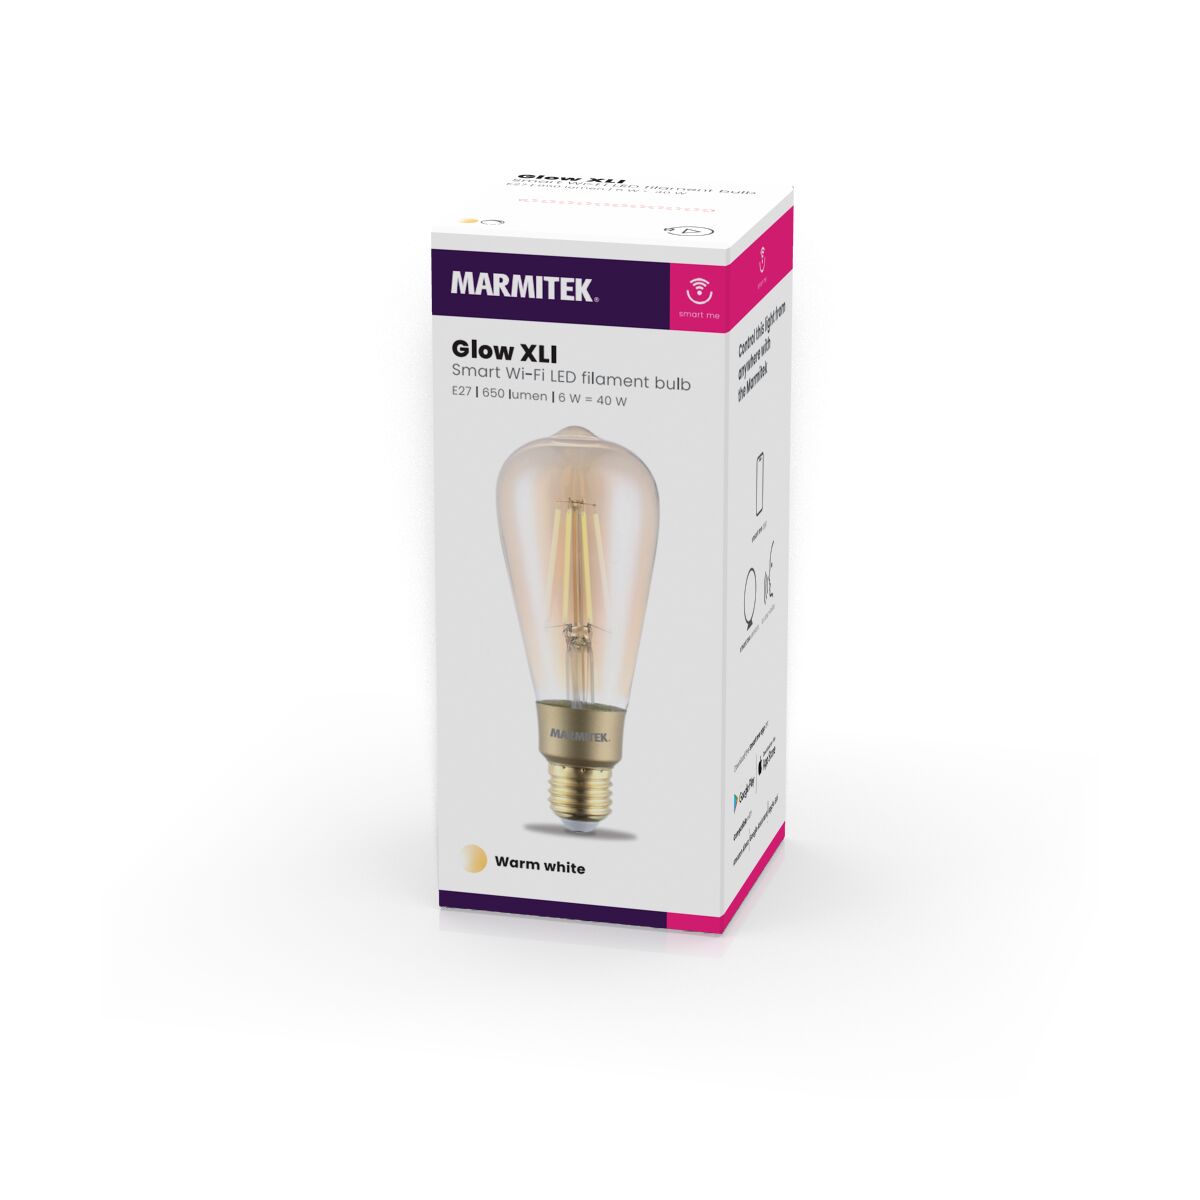 Glow XLI - Filament Lampe - E27 - Steuerung per App